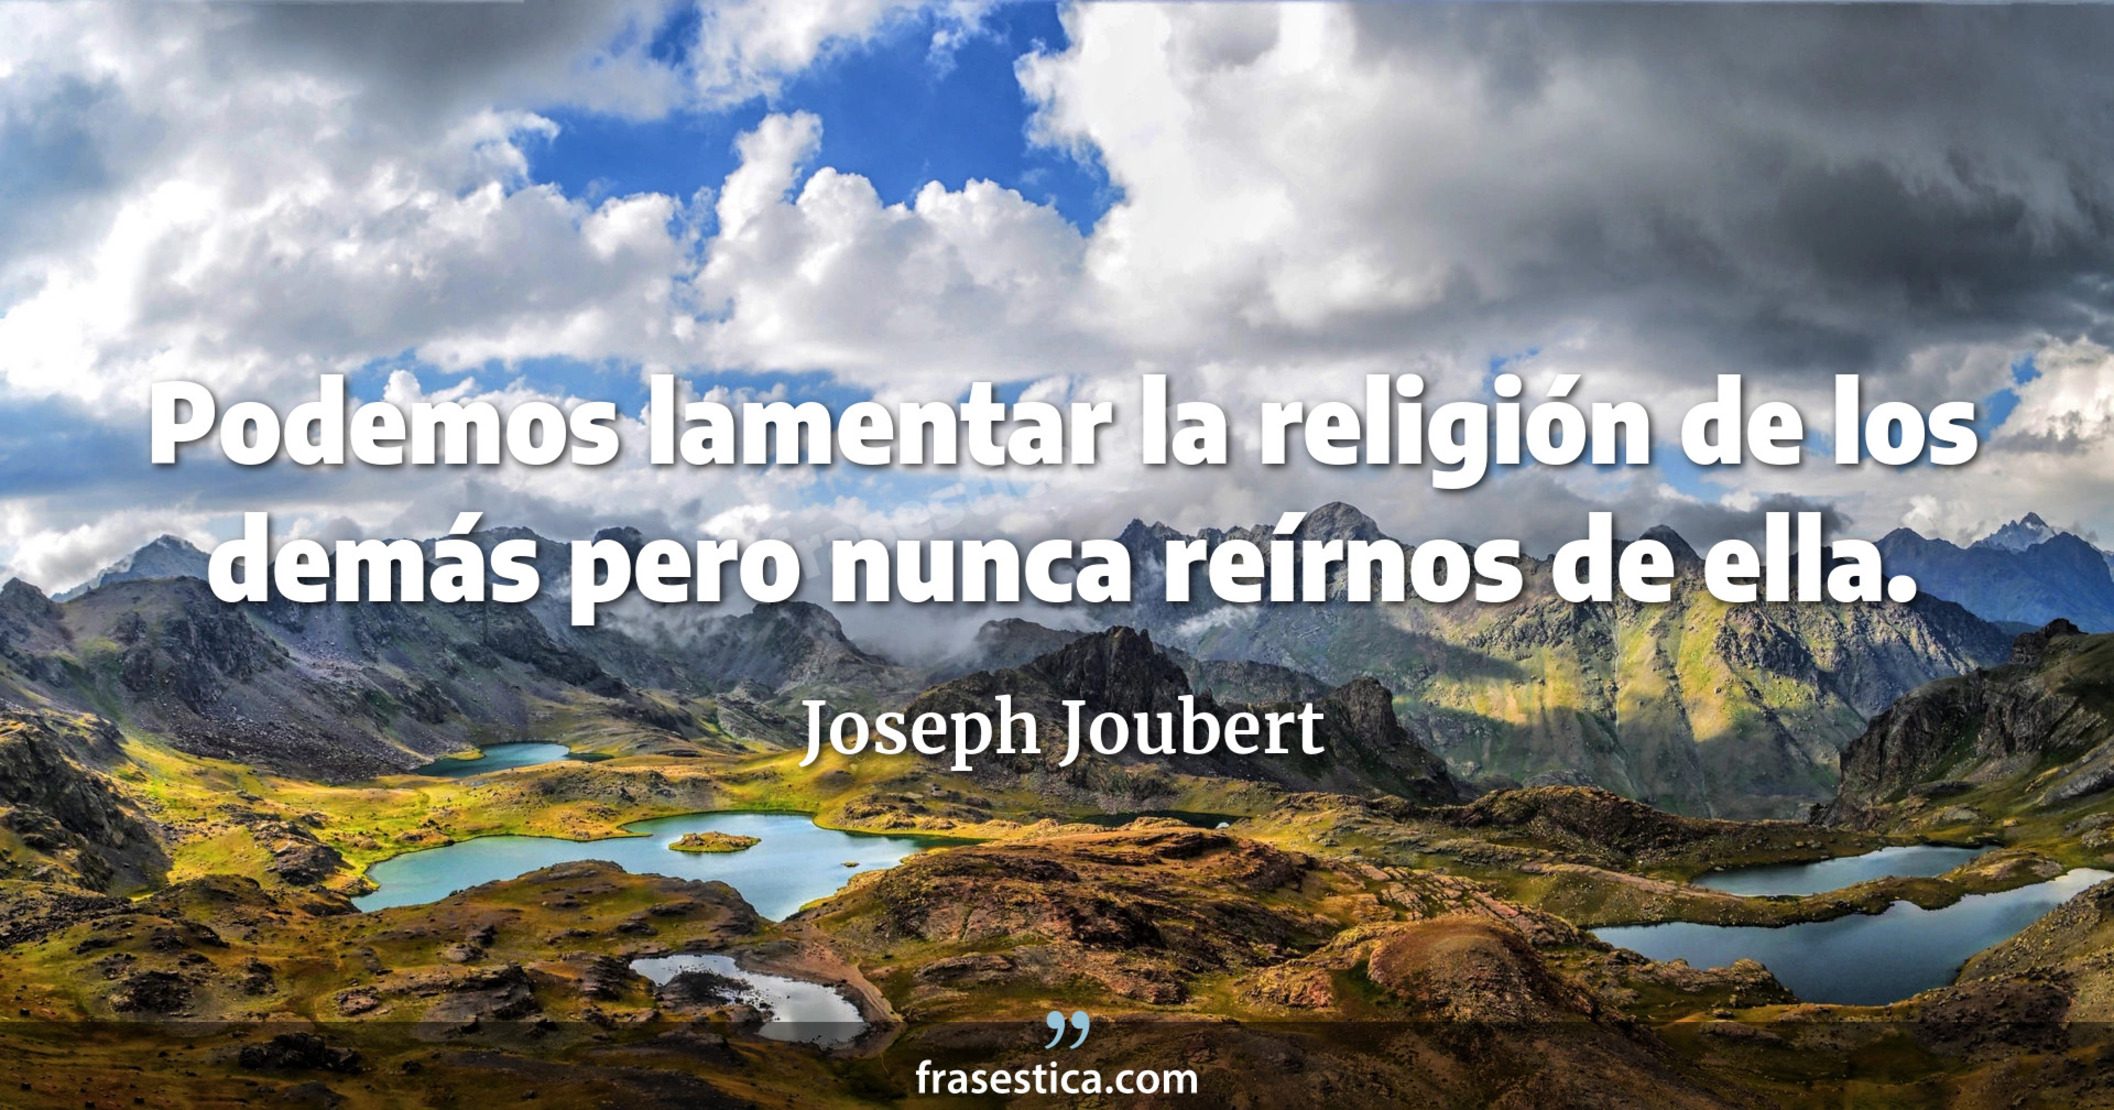 Podemos lamentar la religión de los demás pero nunca reírnos de ella. - Joseph Joubert